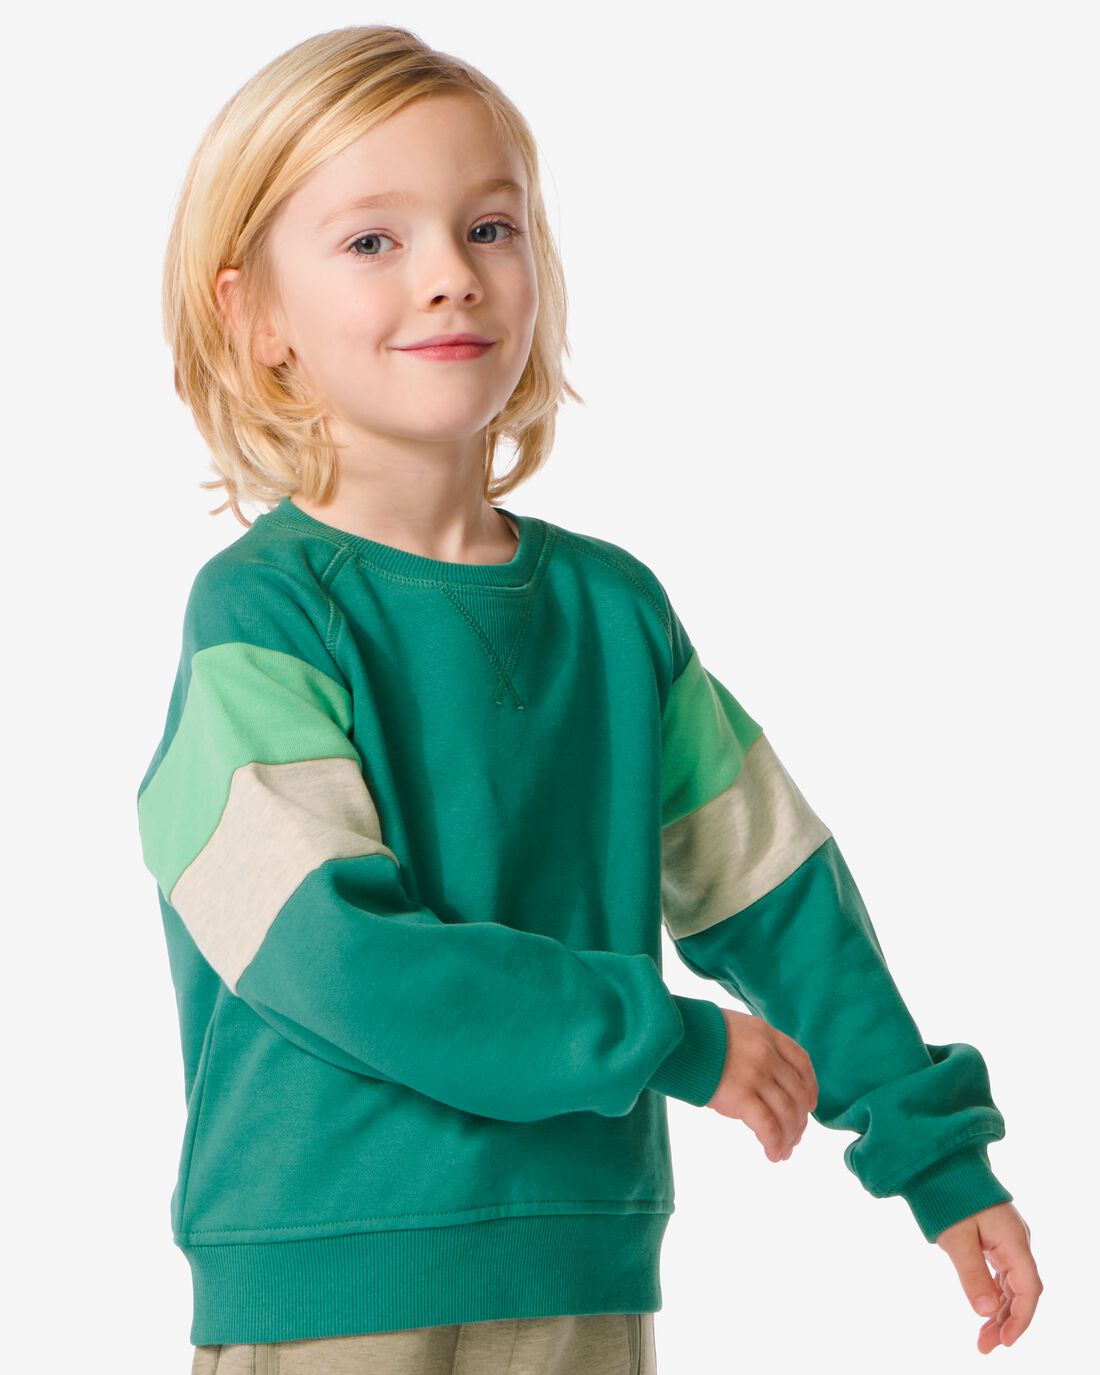 HEMA Kindersweater Met Kleurblokken Groen (groen)